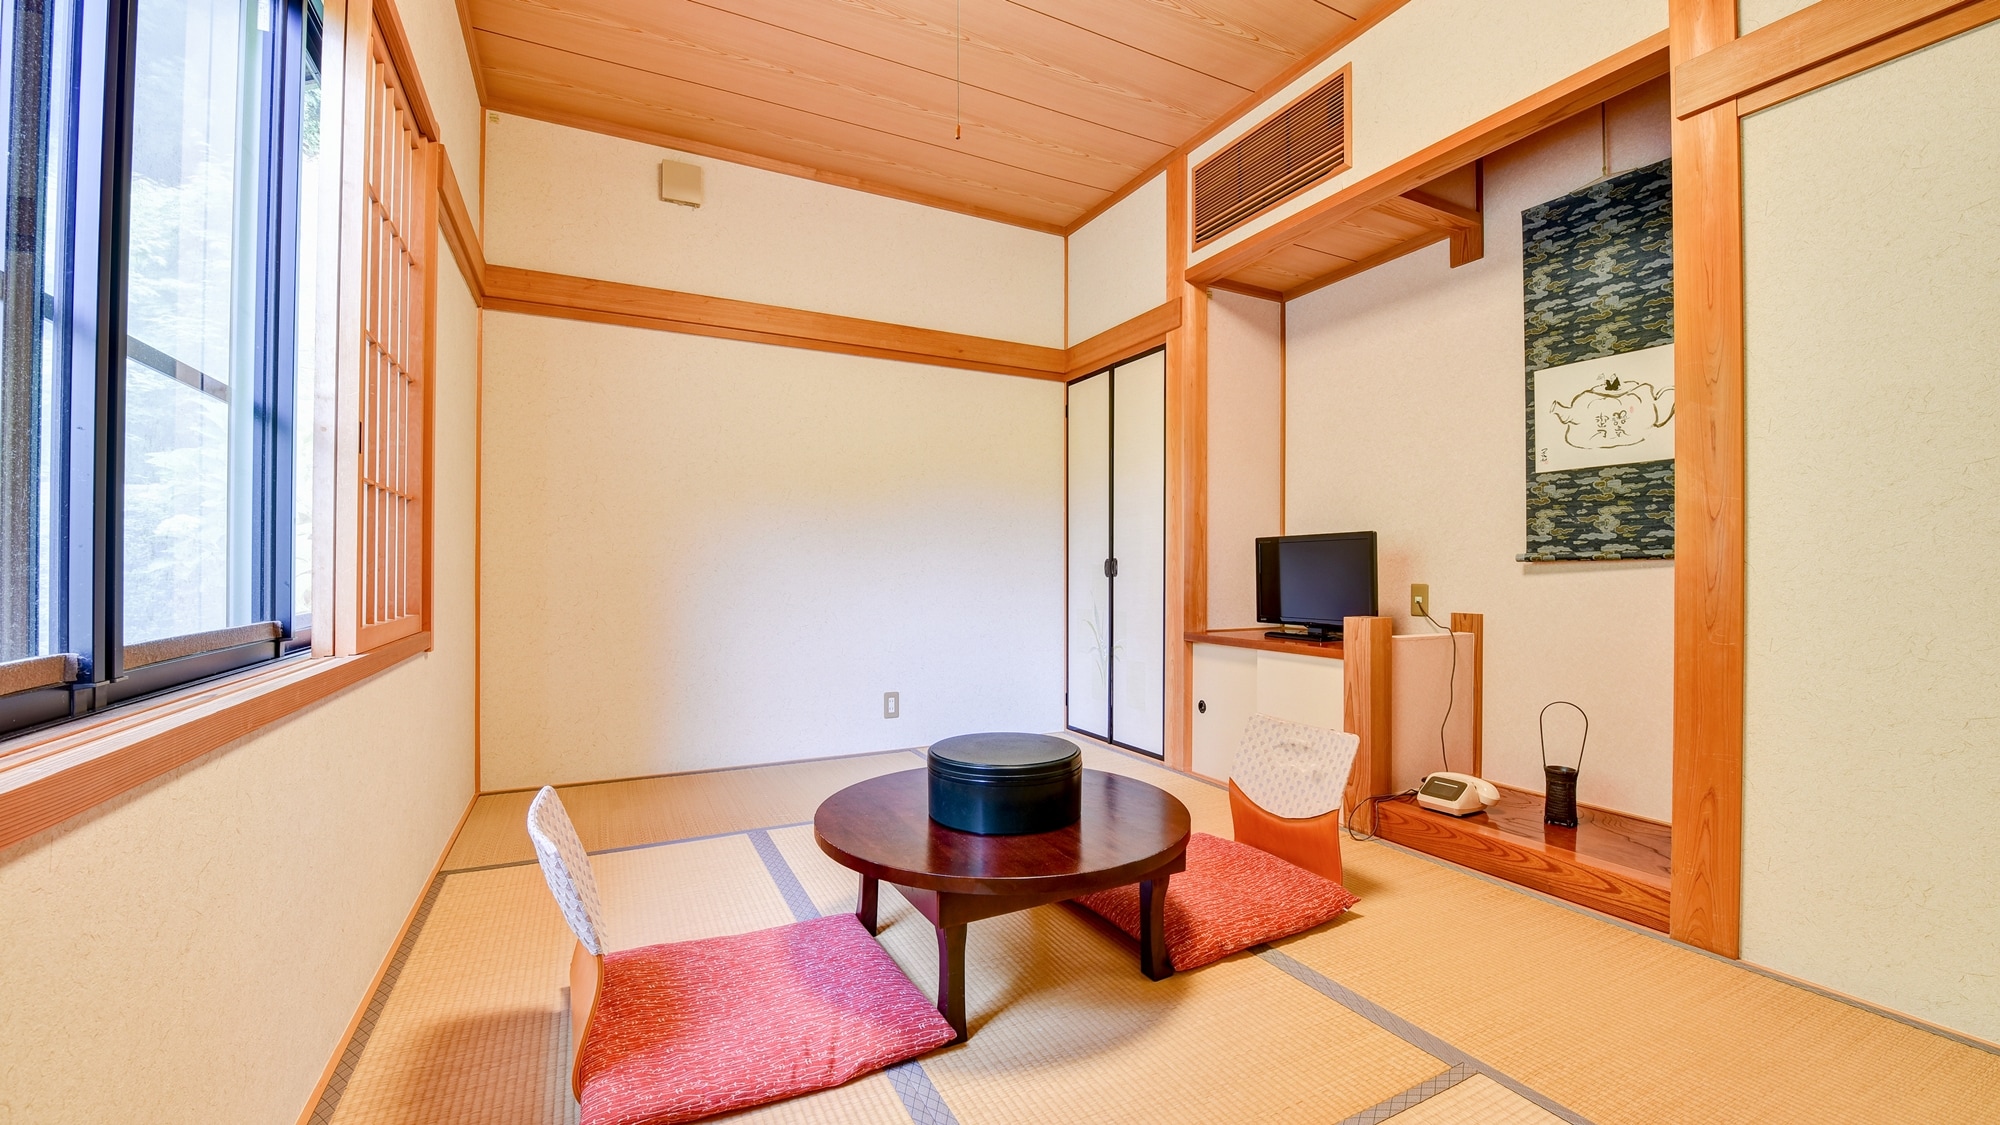 * ■ ห้องสไตล์ญี่ปุ่น 6 เสื่อทาทามิ (ตัวอย่าง) ■ คู่รัก คู่รัก เพื่อนที่ดี ห้องสำหรับ 2 คน